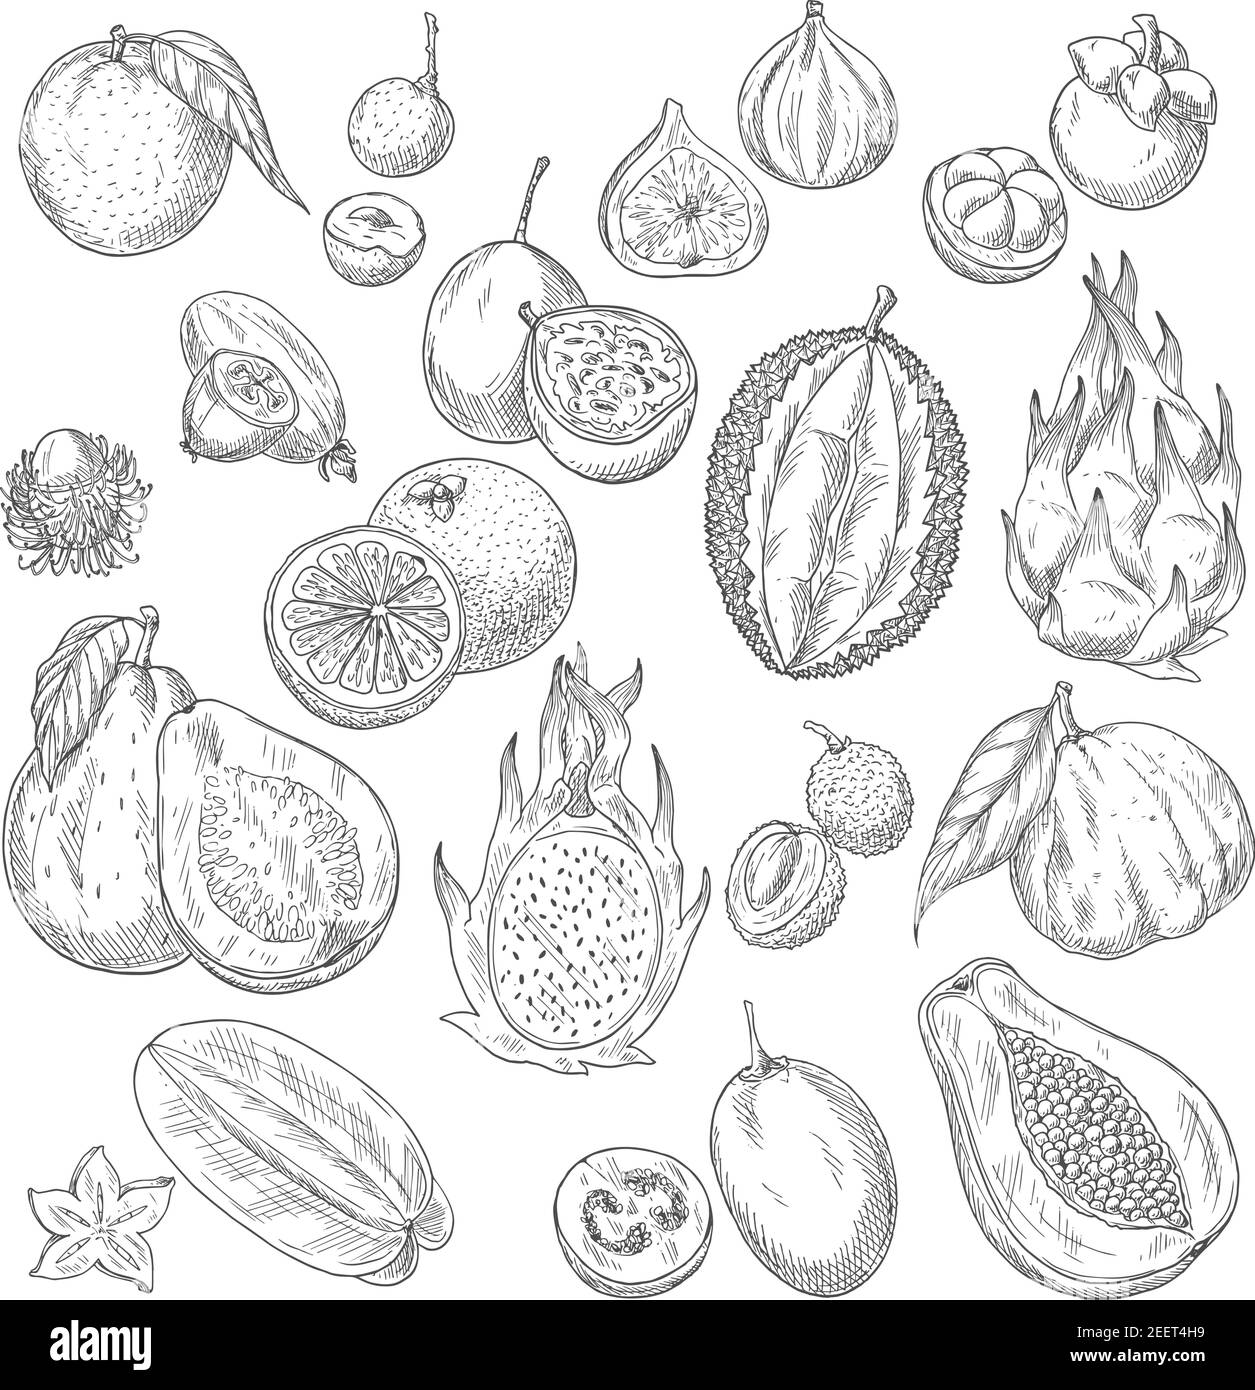 Exotische Früchte Skizze von Papaya und Mango, Feigen und Avocado, Passionsfrucht Maracuya und Carambola, Durian und Guava oder Feijoa, Lichee, Mangostan oder Ramb Stock Vektor